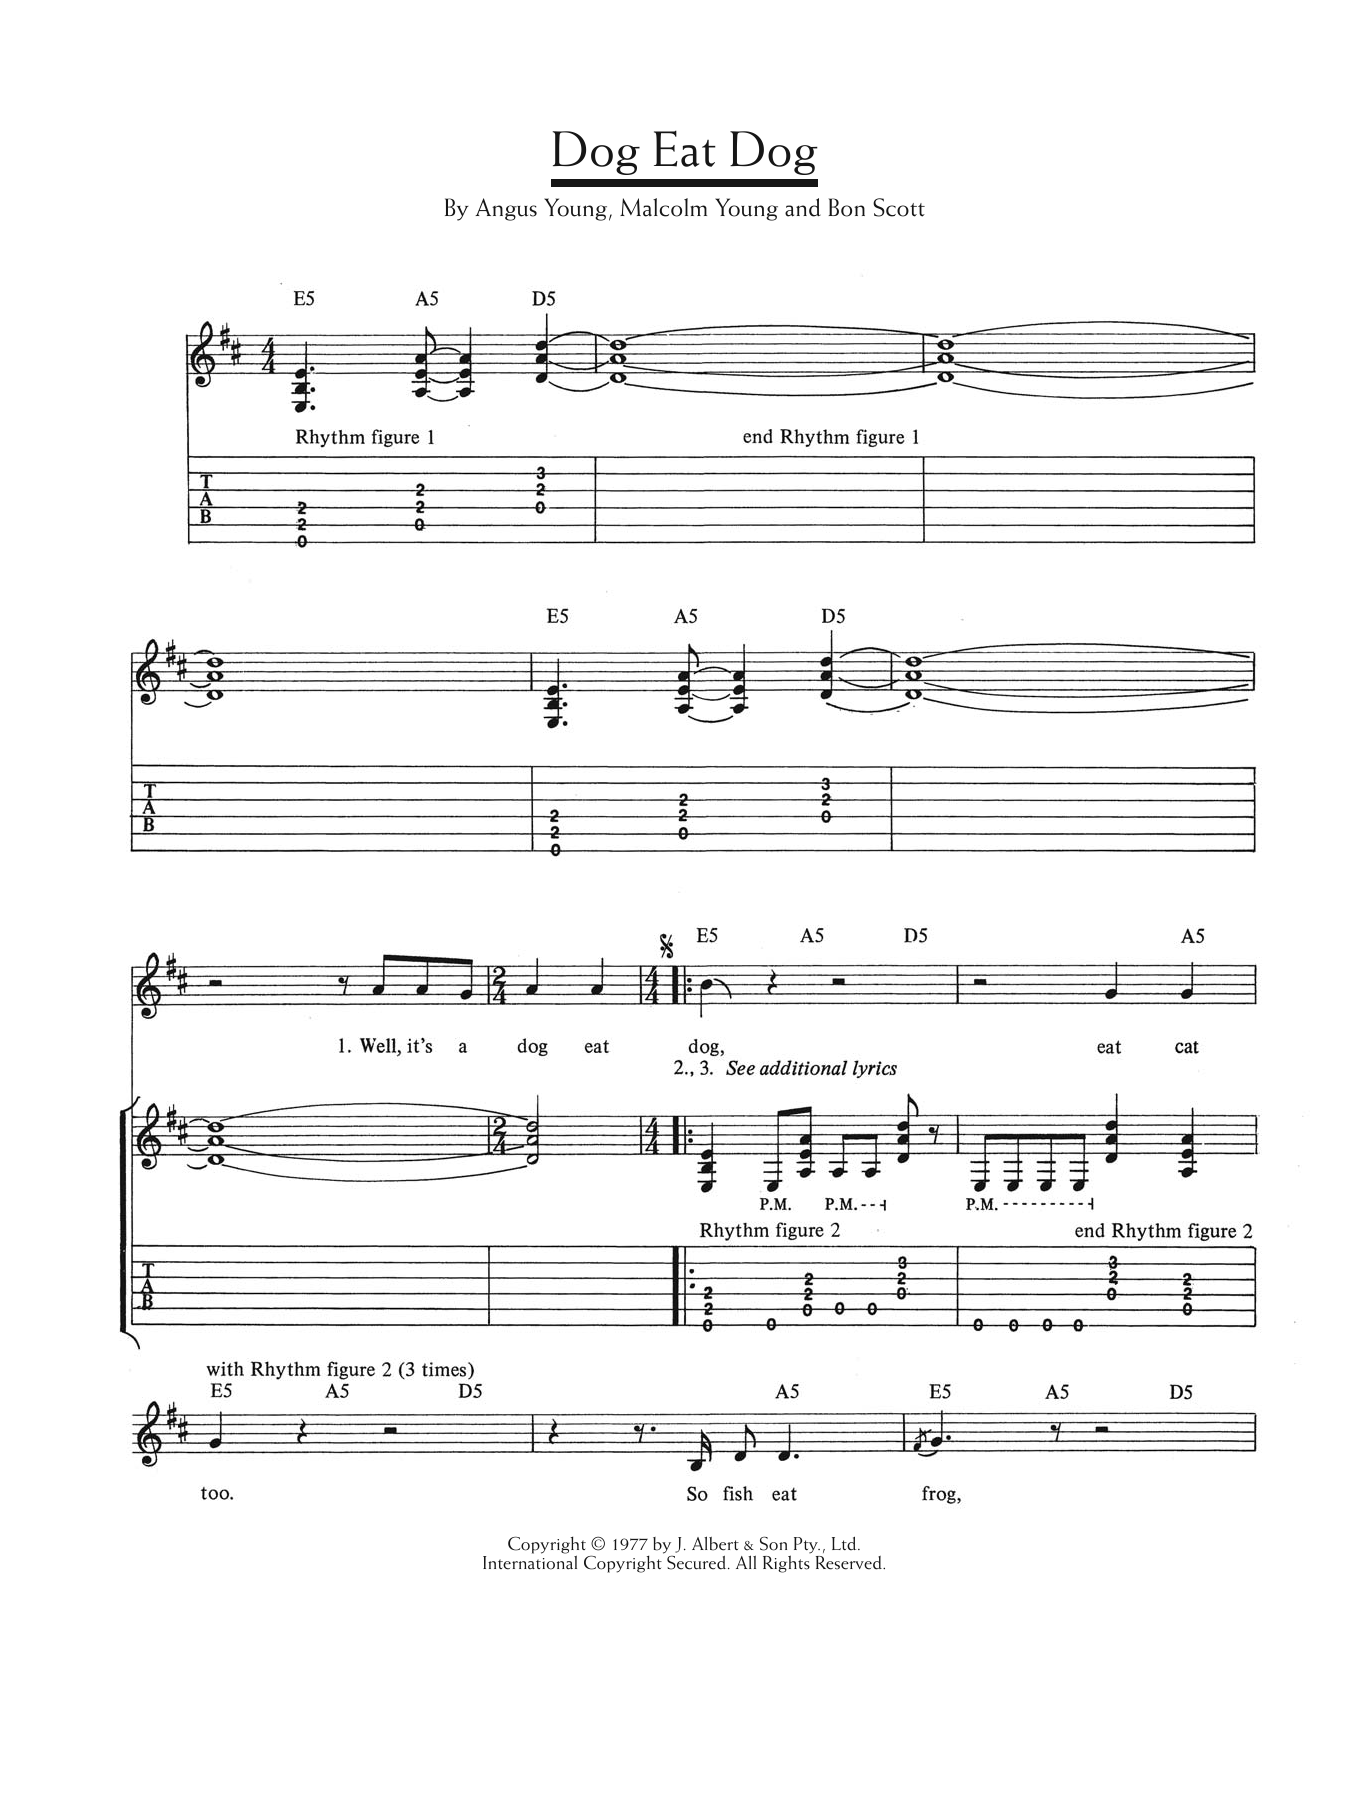 AC/DC Dog Eat Dog Sheet Music Notes & Chords for Lyrics & Chords - Download or Print PDF